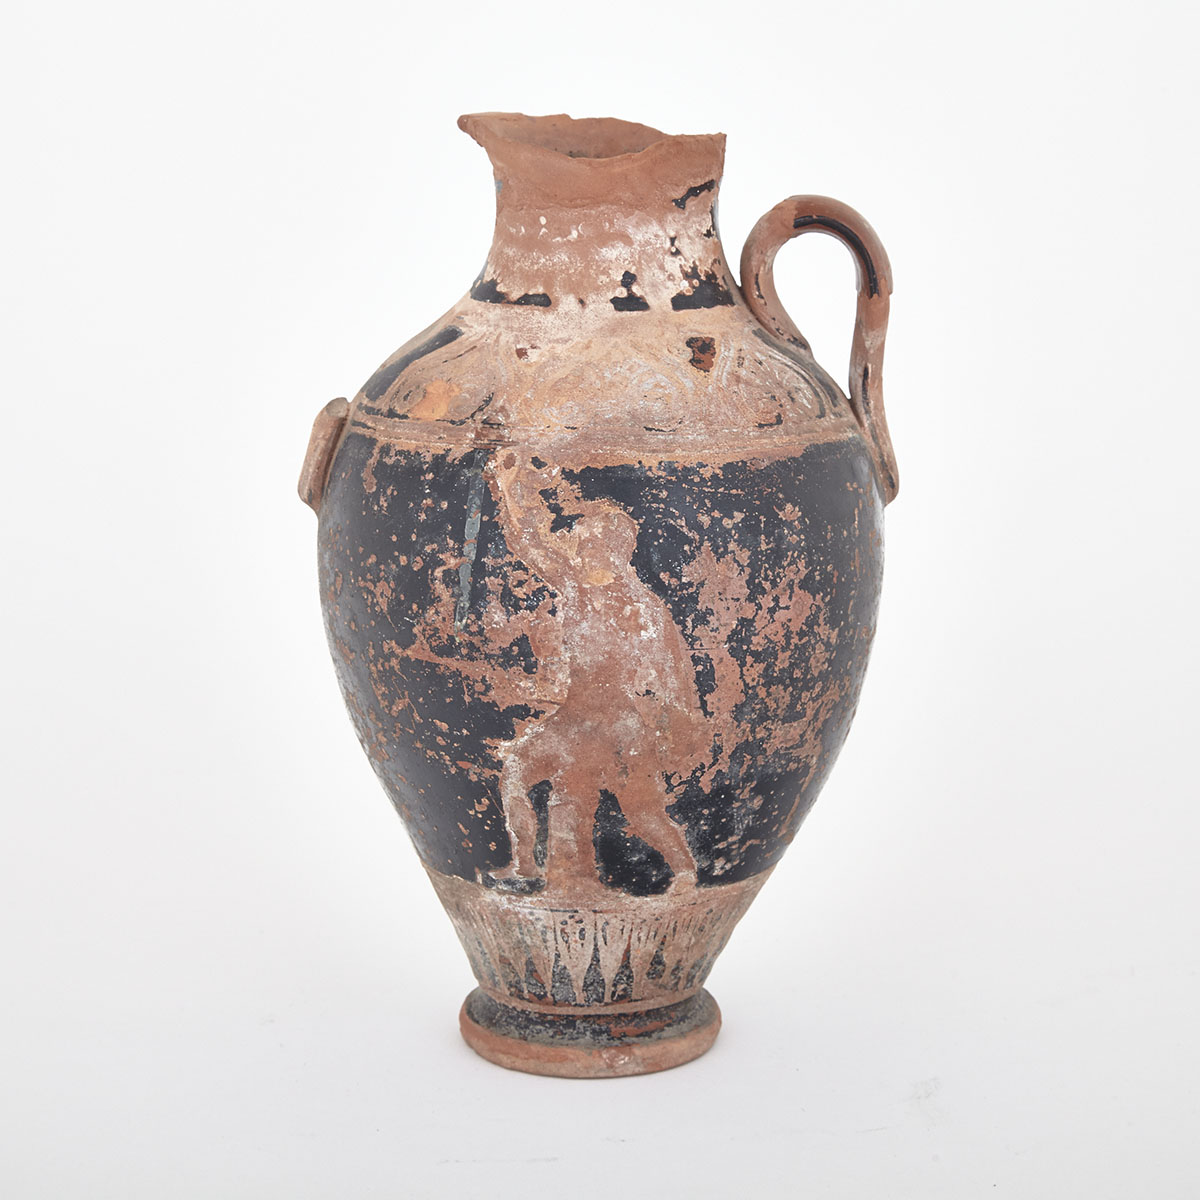 Attic Red Figured Neck Amphora, 5th century BC